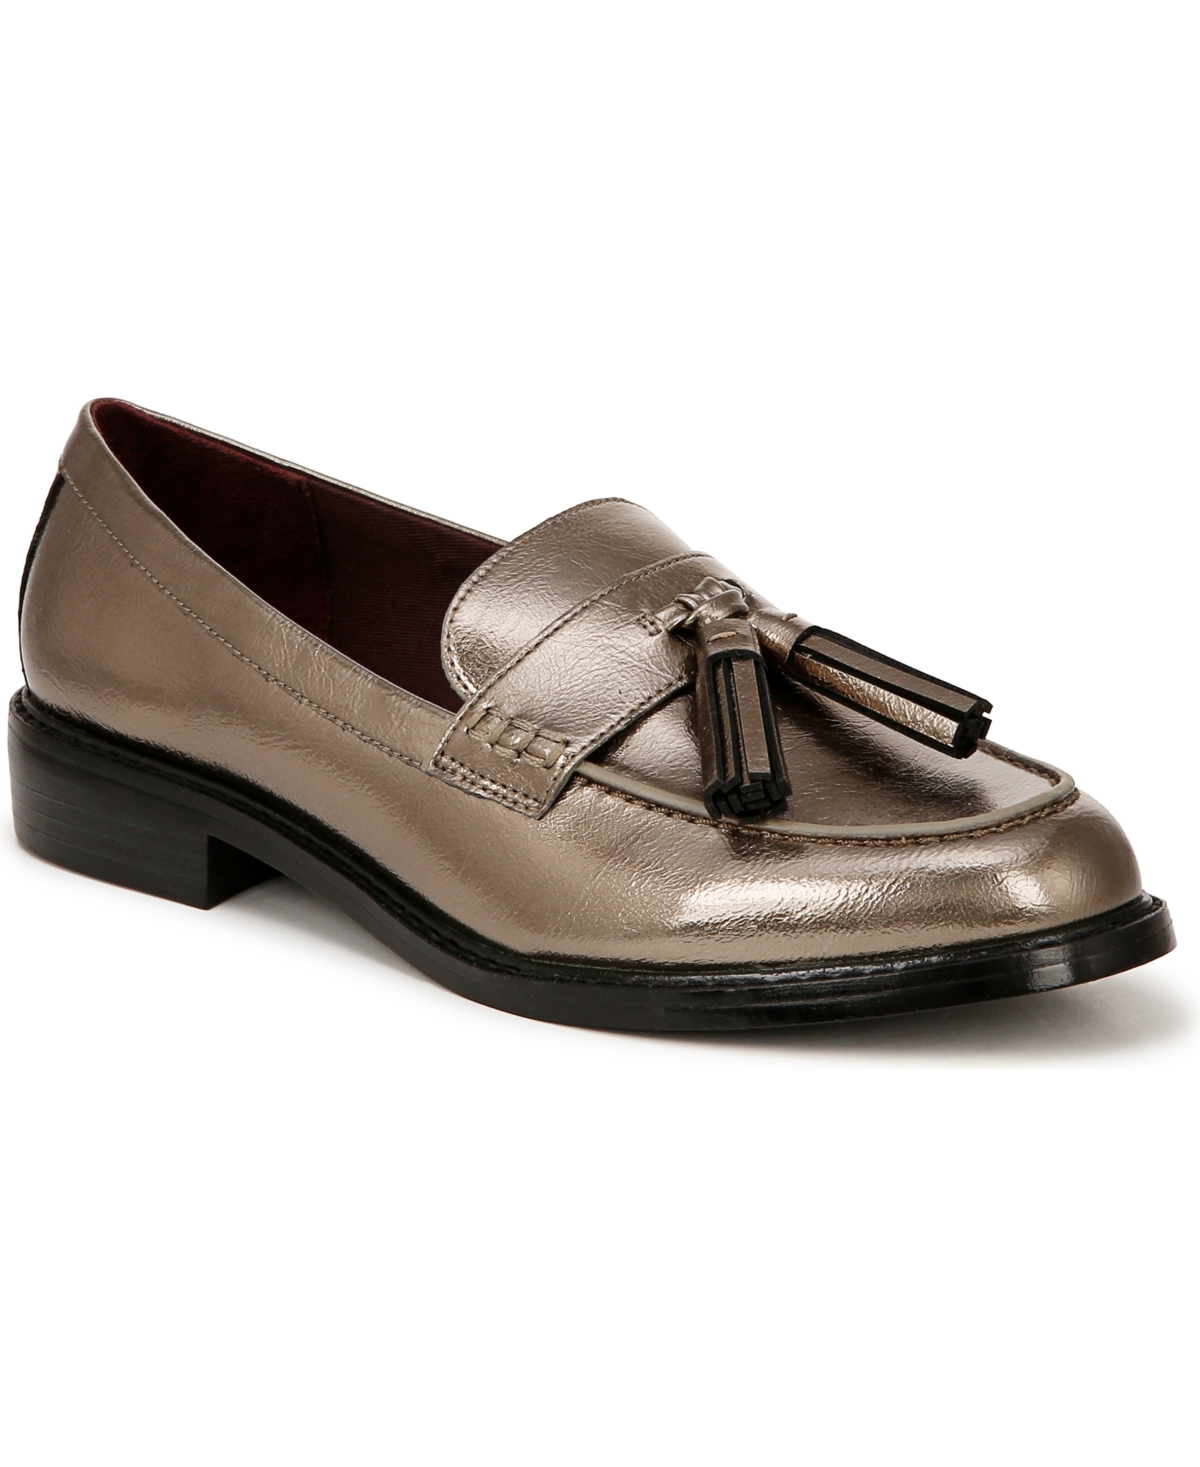 Women's Carolyn-Low Tassel Loafers - Pewter Faux Leather